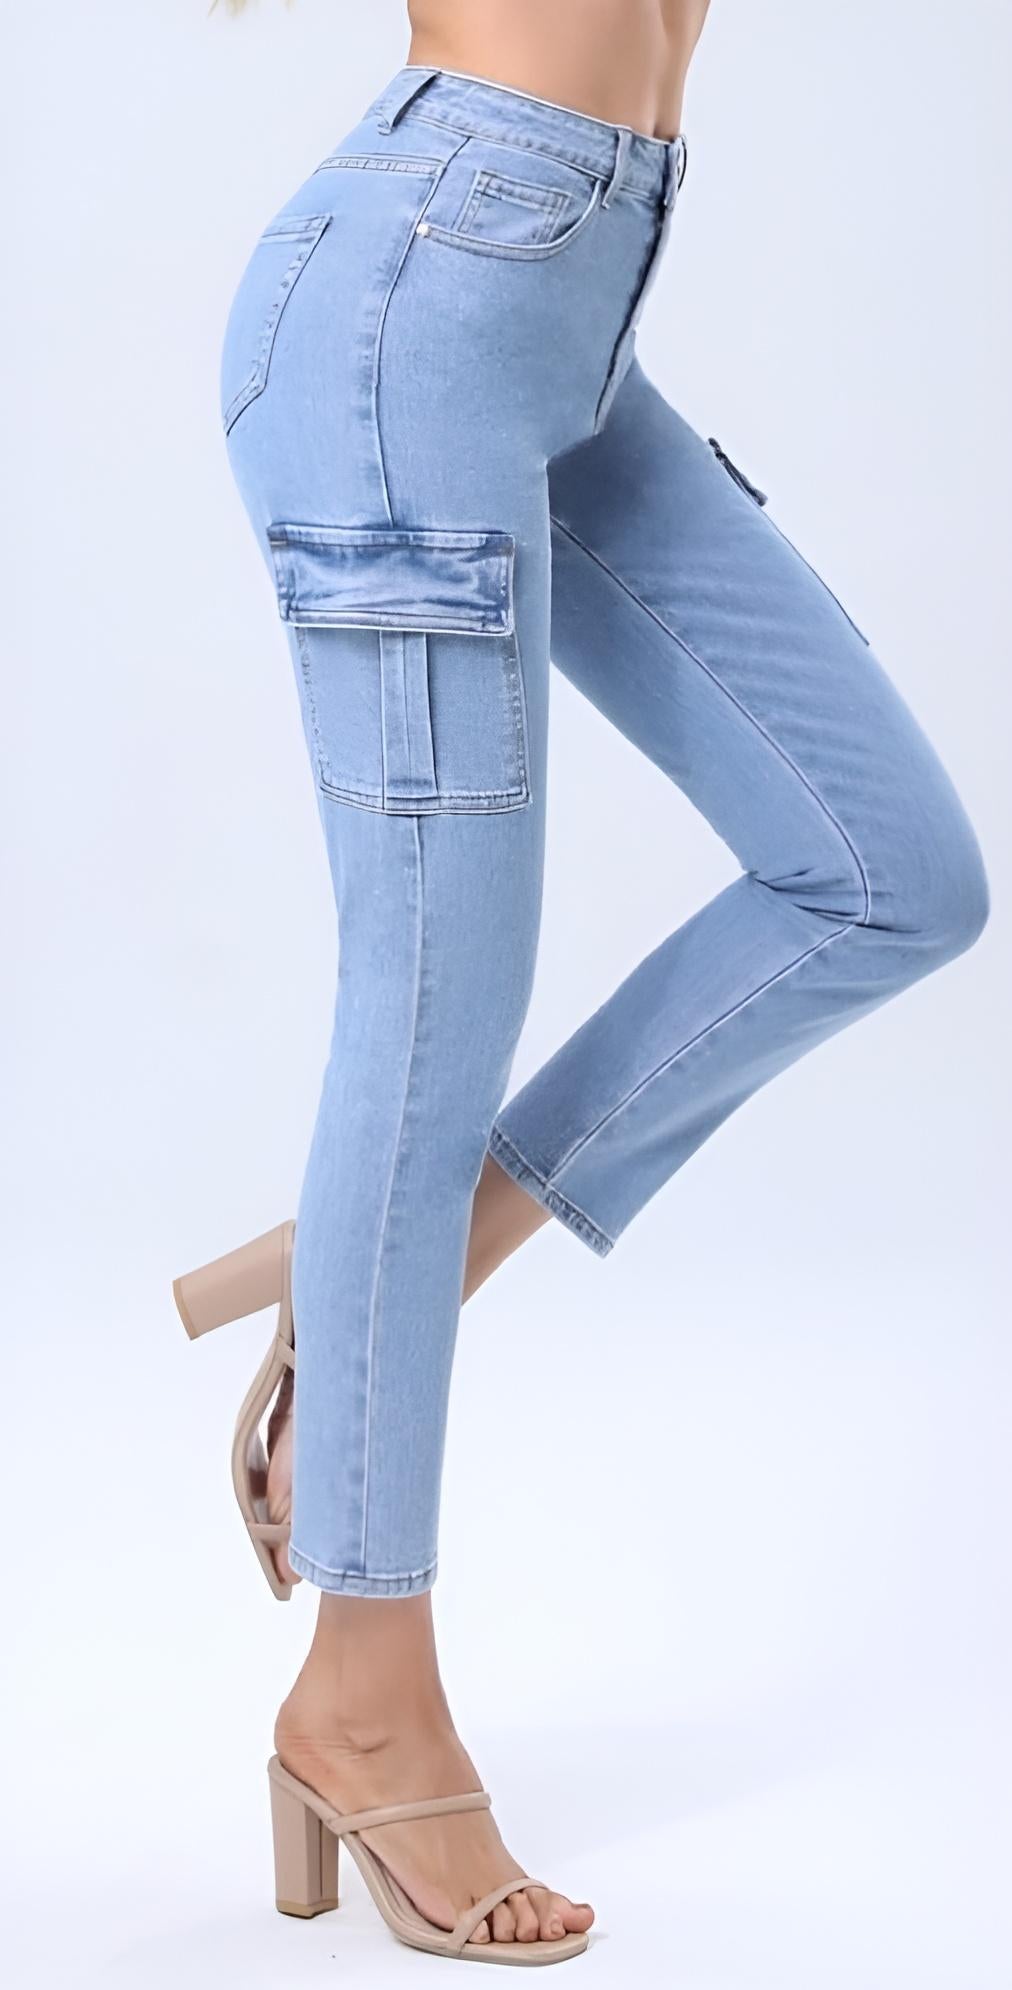 Pantalone Donna Jeans Vita Alta Skinny Tasca Passante Bottone Cerniera Aderente Casual - LE STYLE DE PARIS